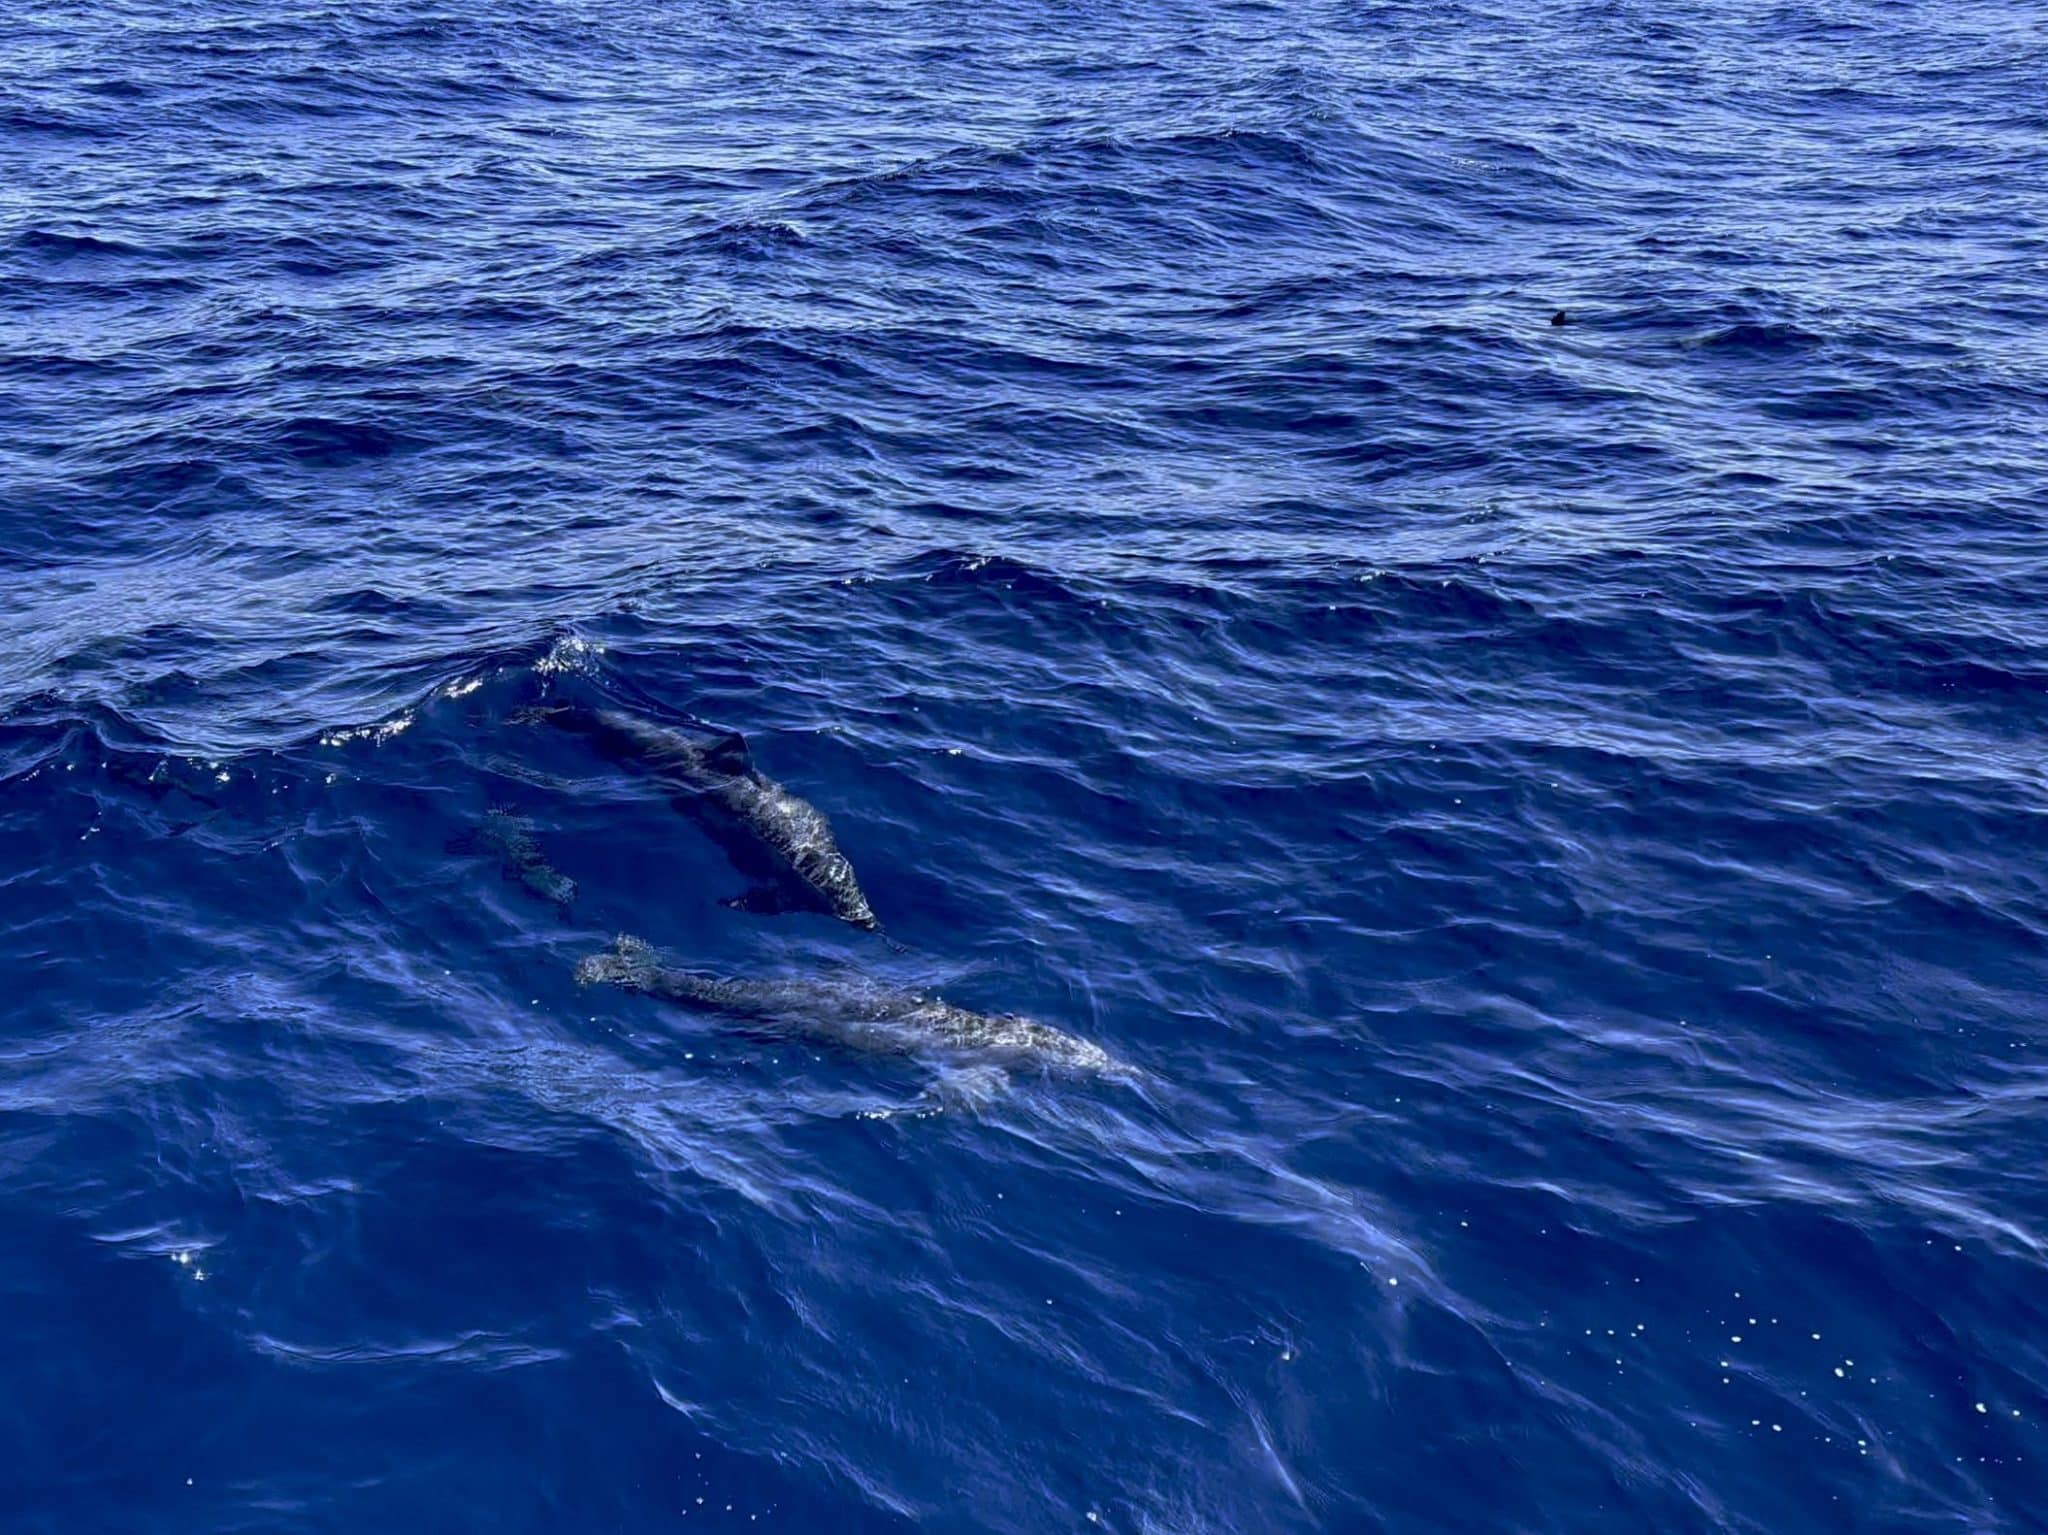 Zwemmen met dolfijnen vanaf het land is ook zelden mogelijk. Om een ​​groep vrijlevende dolfijnen echt te ontmoeten moet je echter vaak wat langer onderweg zijn en echt een beetje geduld hebben.